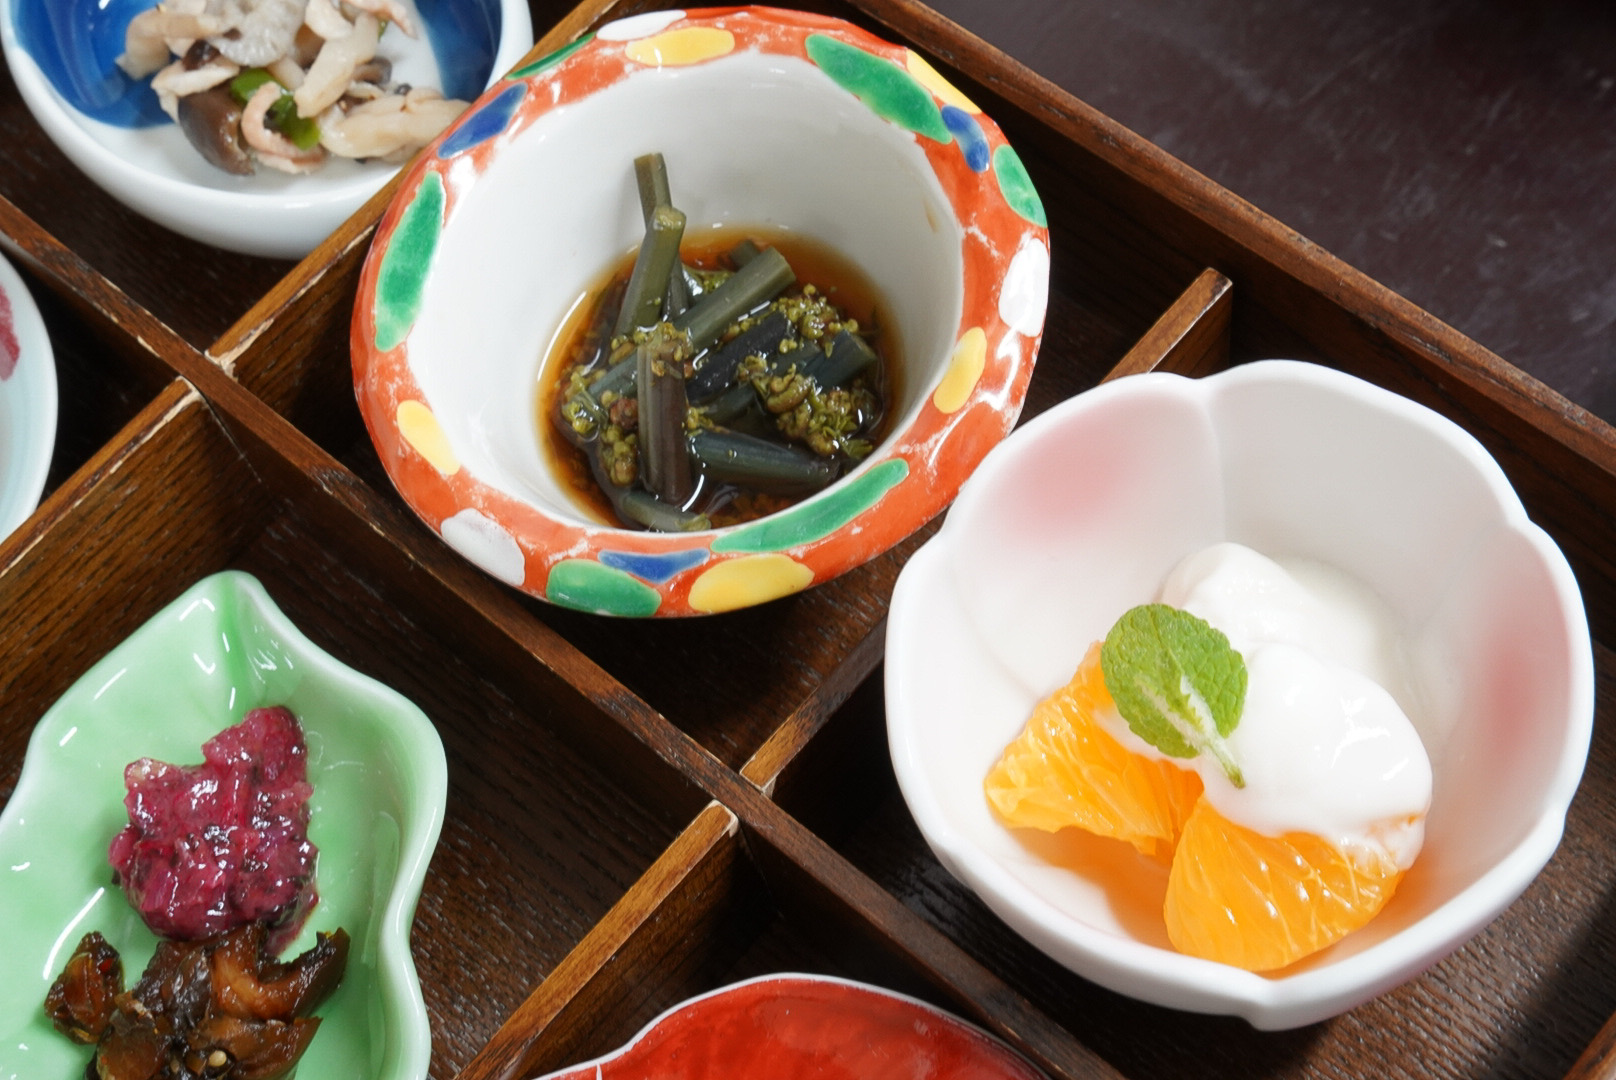 右から、大川産紅甘夏のはちみつヨーグルト添え、伊豆熱川産わらびのおひたし、三島のヒラタケしめじの炒めもの。